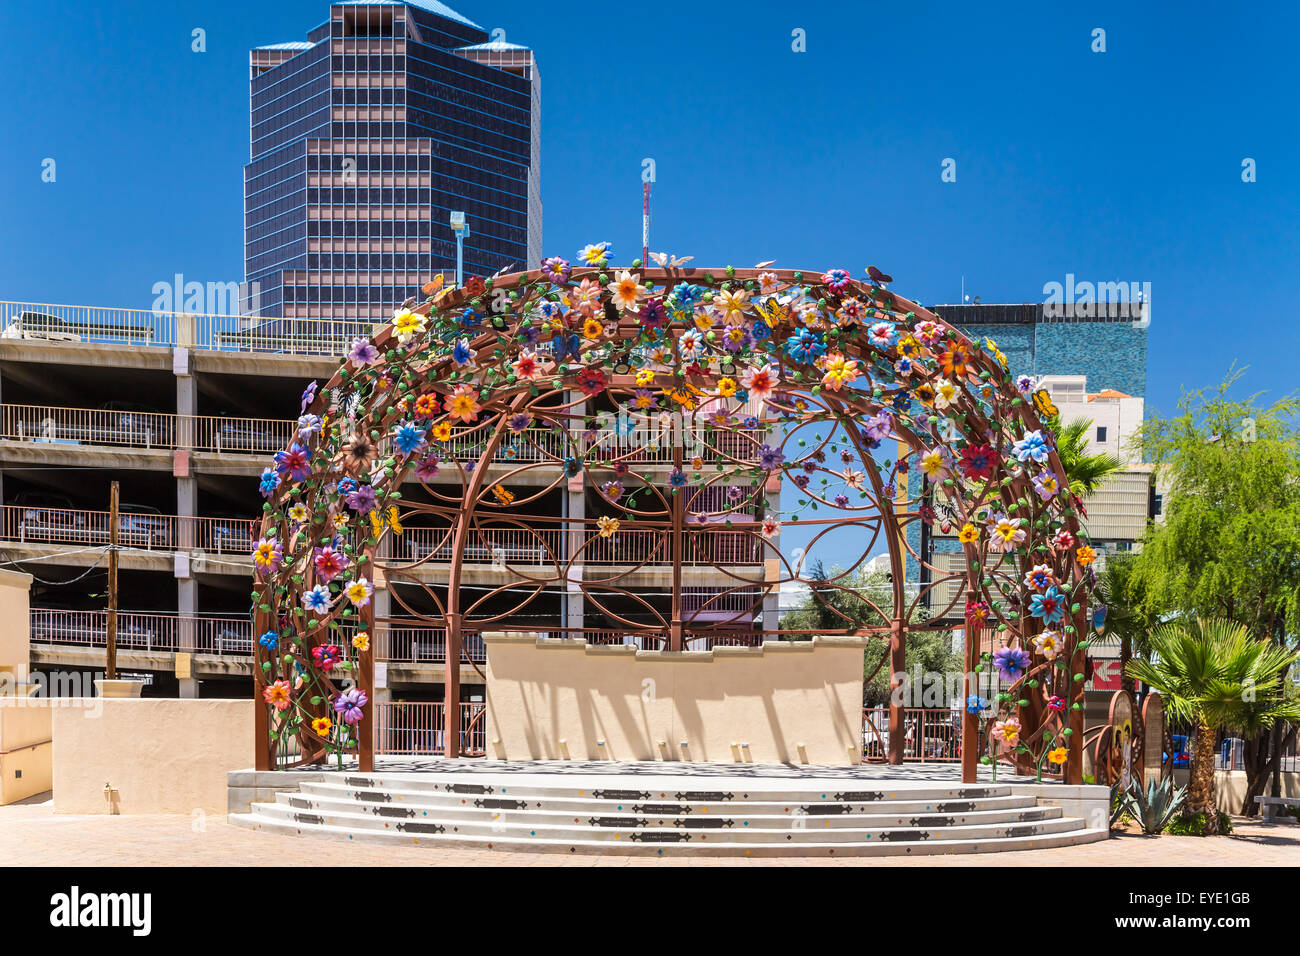 Décoré d'une scène en plein air au centre-ville, Tucson, Arizona, USA. Banque D'Images